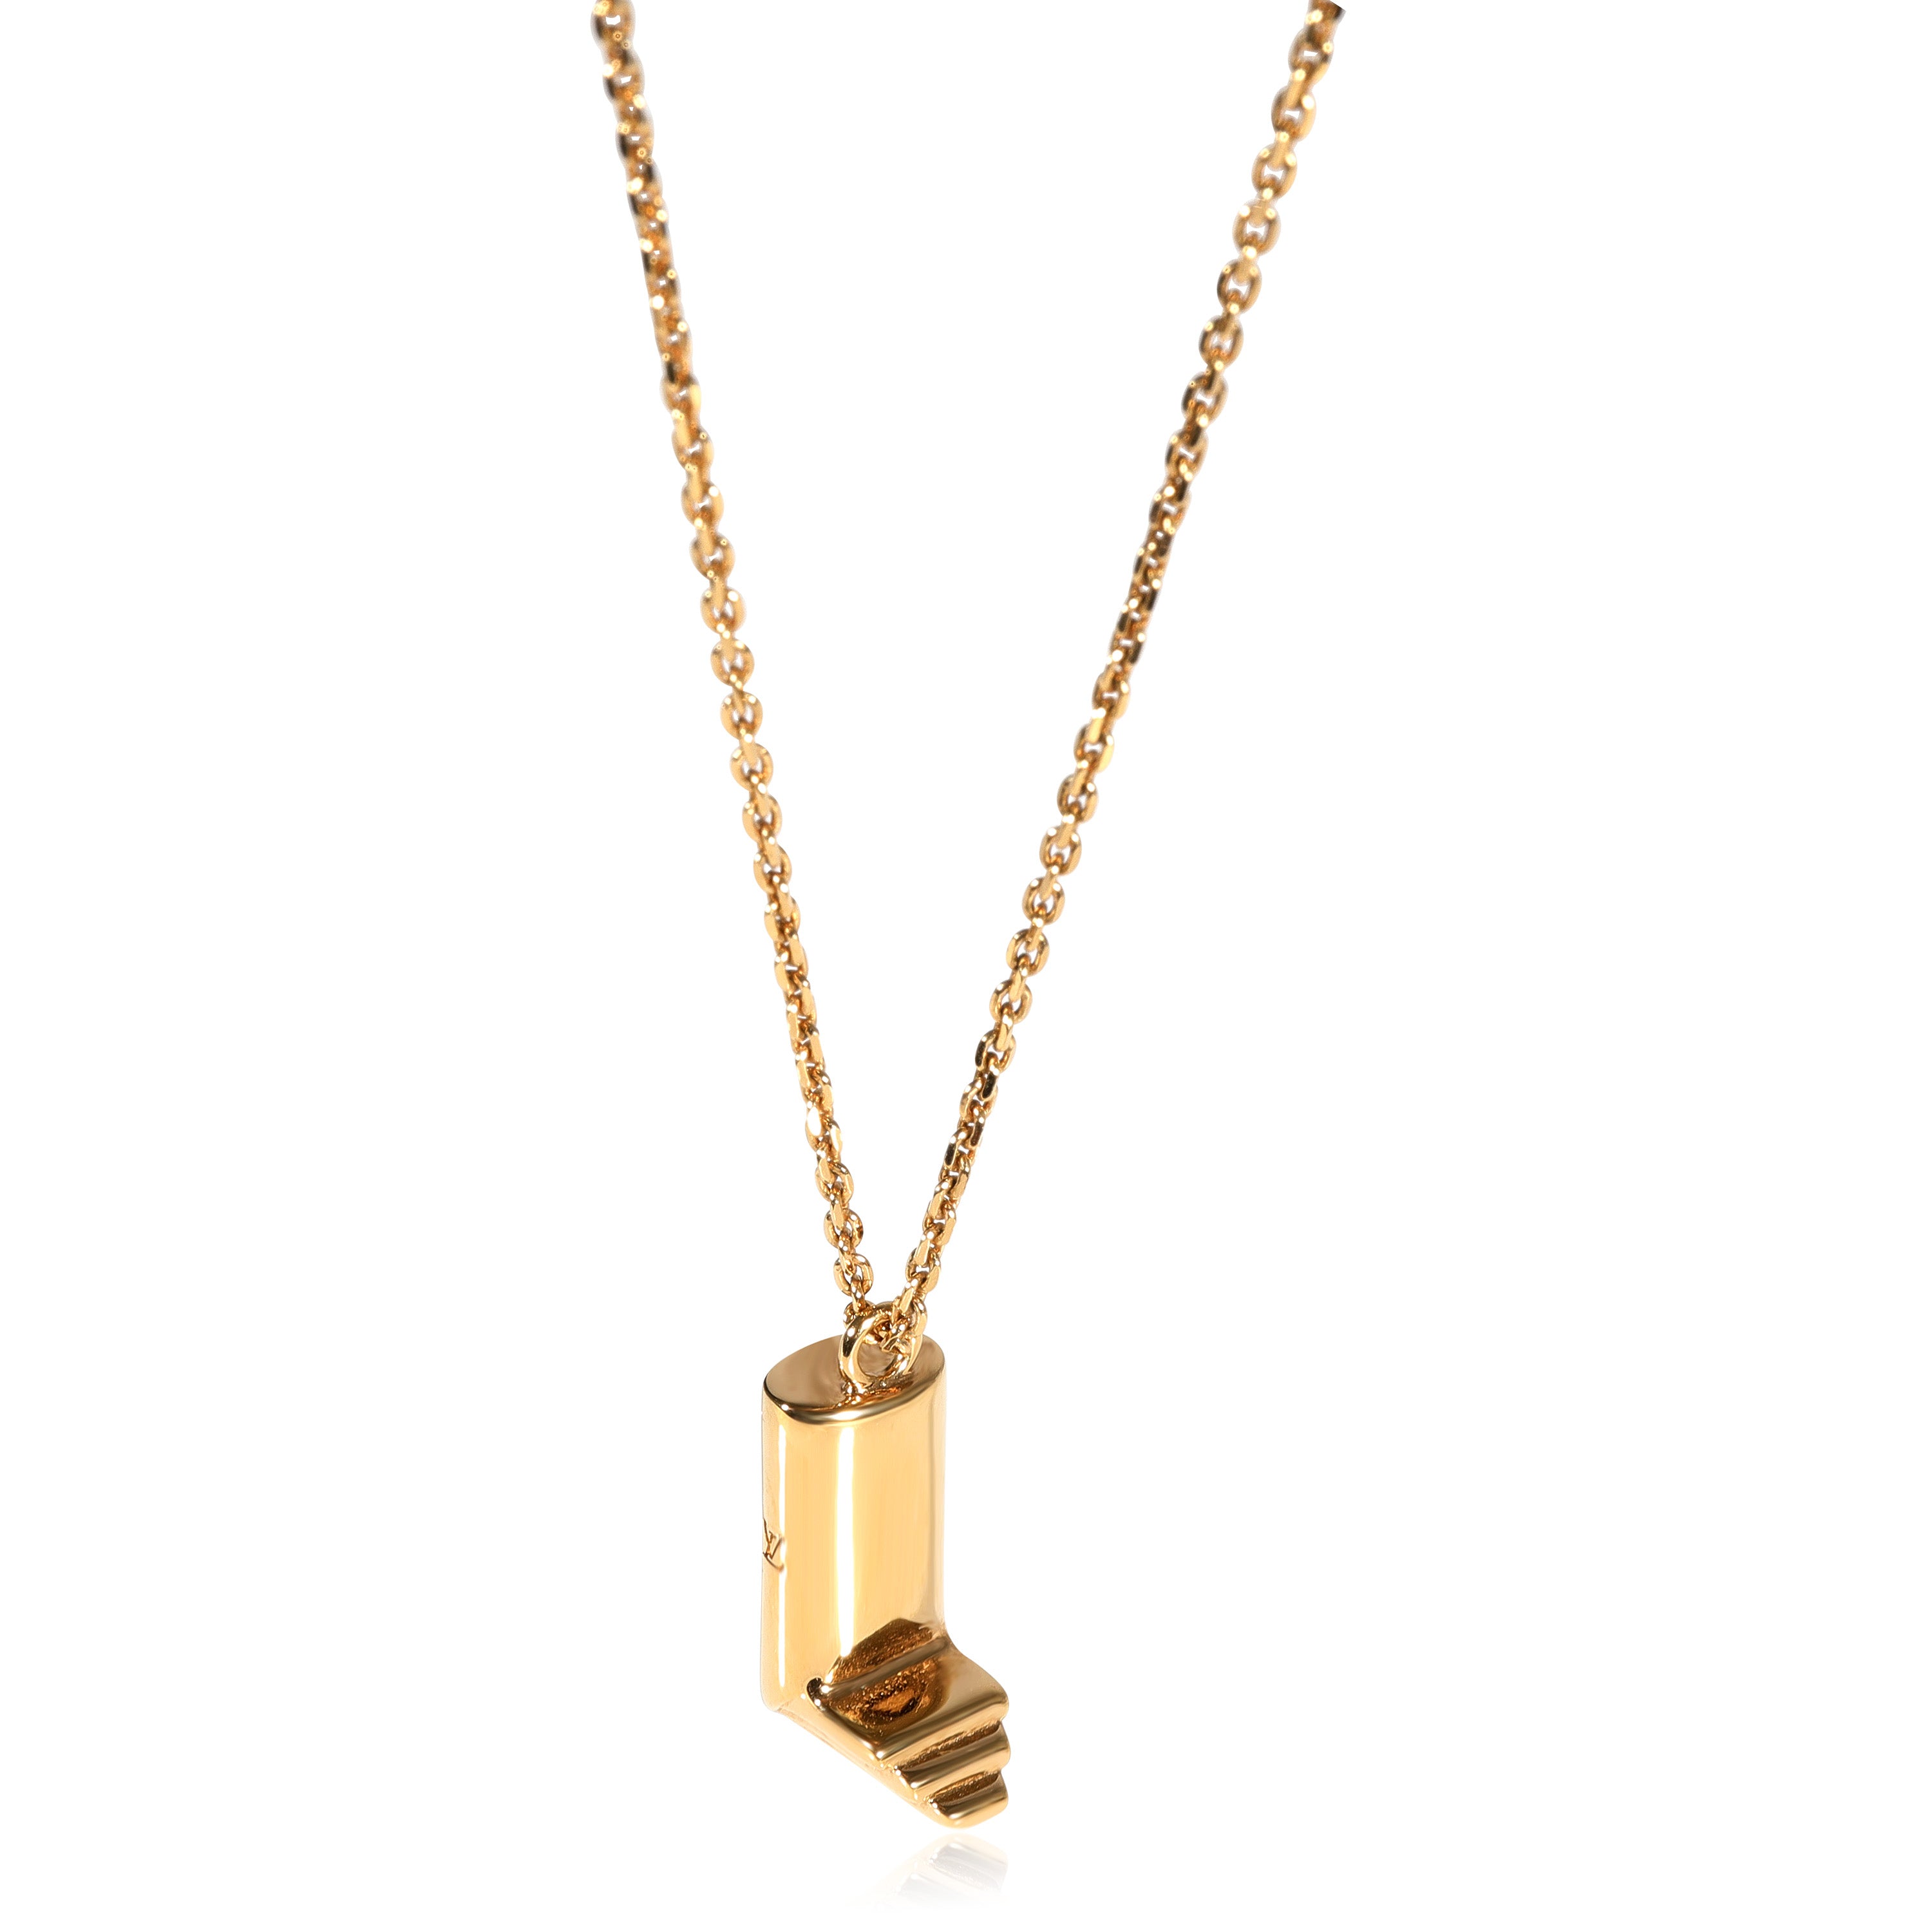 Louis Vuitton LV & Me Necklace, Letter L, on Chain, myGemma, IT